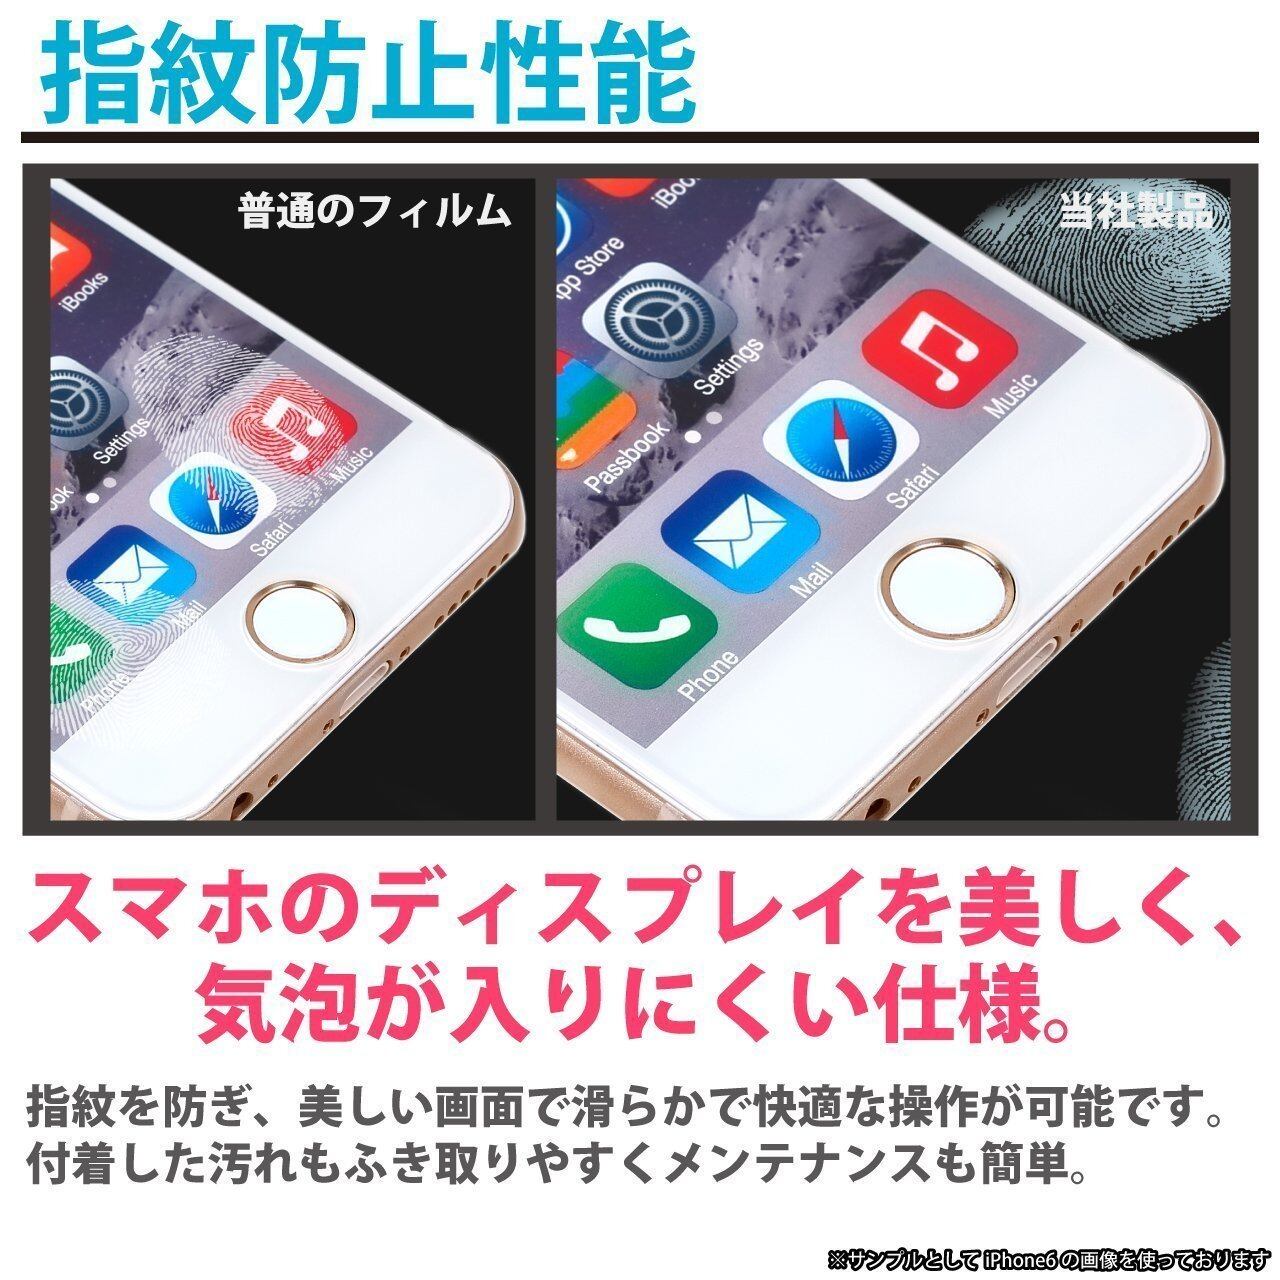 4D 全面保護 】 iPhone 7 専用設計 ガラスフィルム 液晶保護フィルム 【フレーム部分にもガラスを使用】 フィルム 4.7インチ用  0.3mm 【3D Touch対応 / 硬度9H / 気泡防止】 (ブラック) | スマートフォンアクセサリー専門店 PS JAPAN